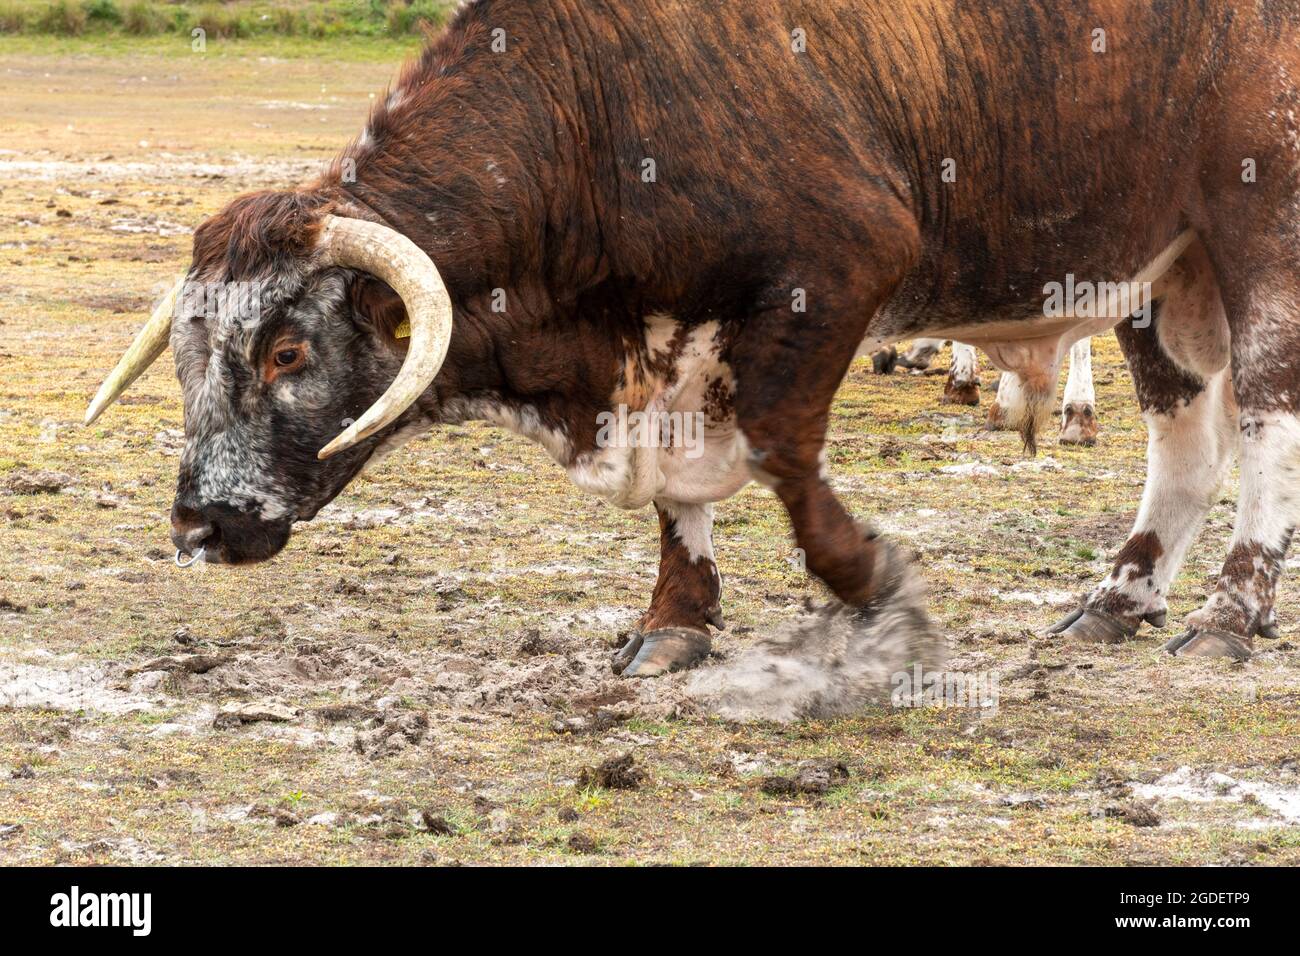 Le vieux taureau Longhorn anglais montre un comportement agressif en pageant le sol avec son sabot, Angleterre, Royaume-Uni Banque D'Images